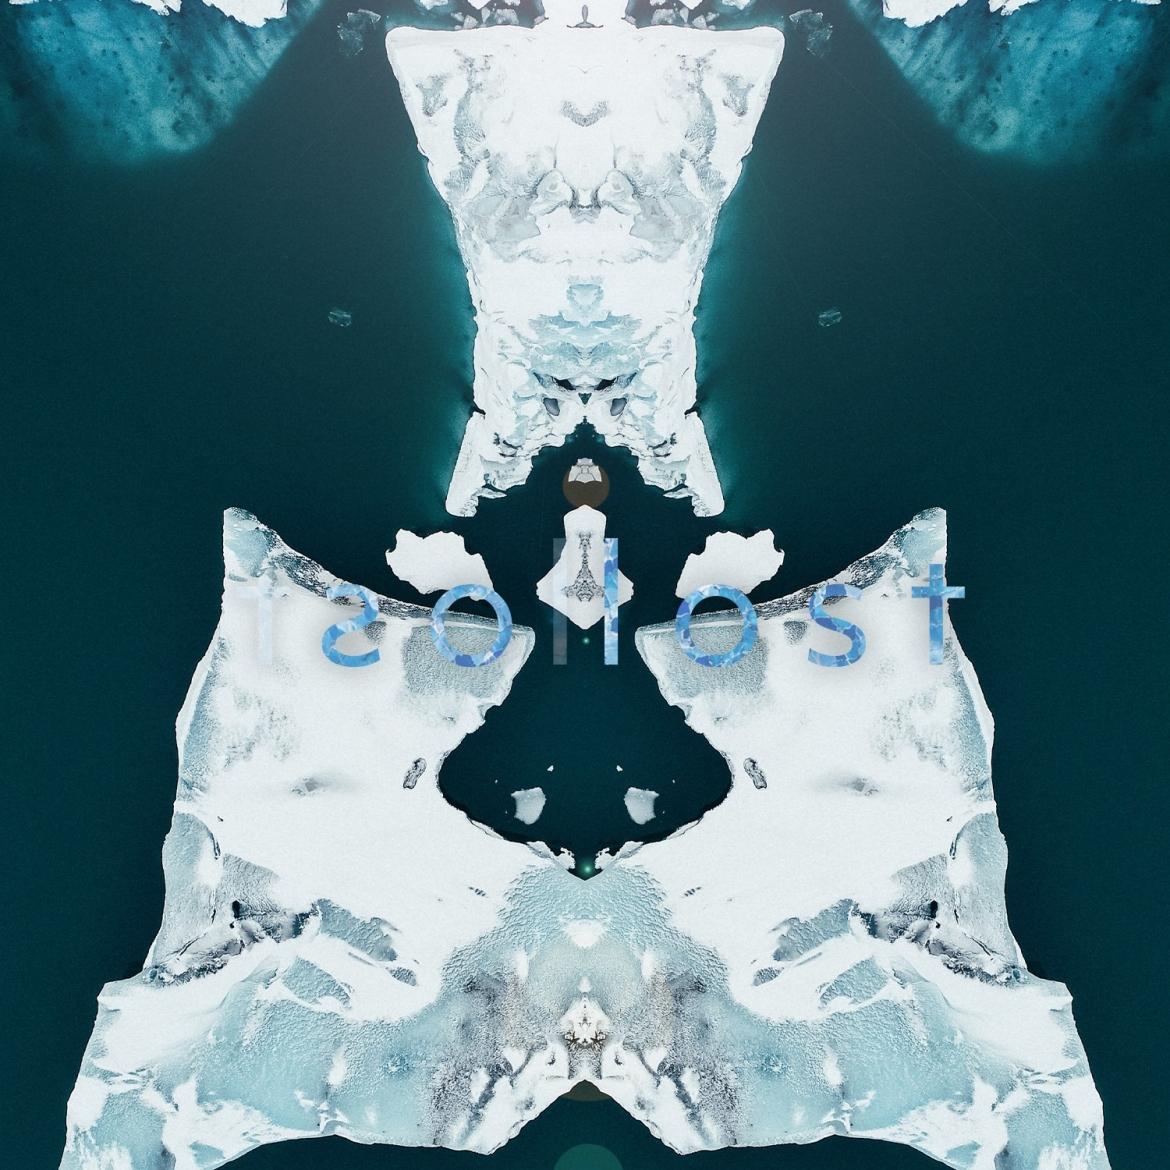 Mehrere Eisschollen die auf Wasser treiben. Das Bild ist symmetrisch.